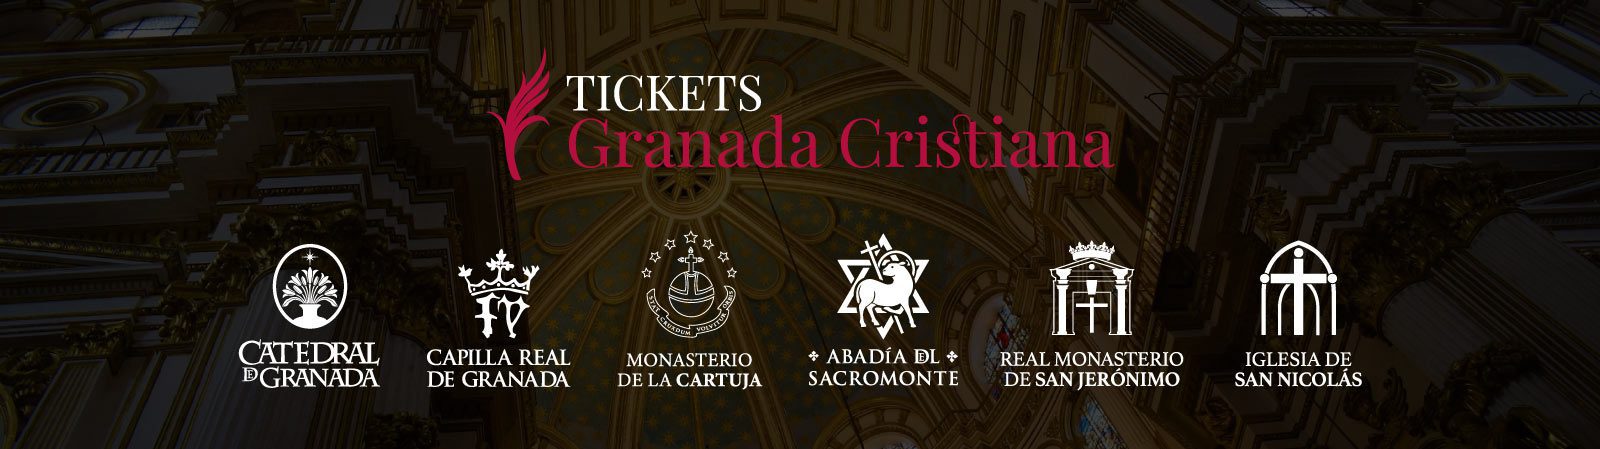 Diseño de estrategia online para Tickets Granada Cristiana